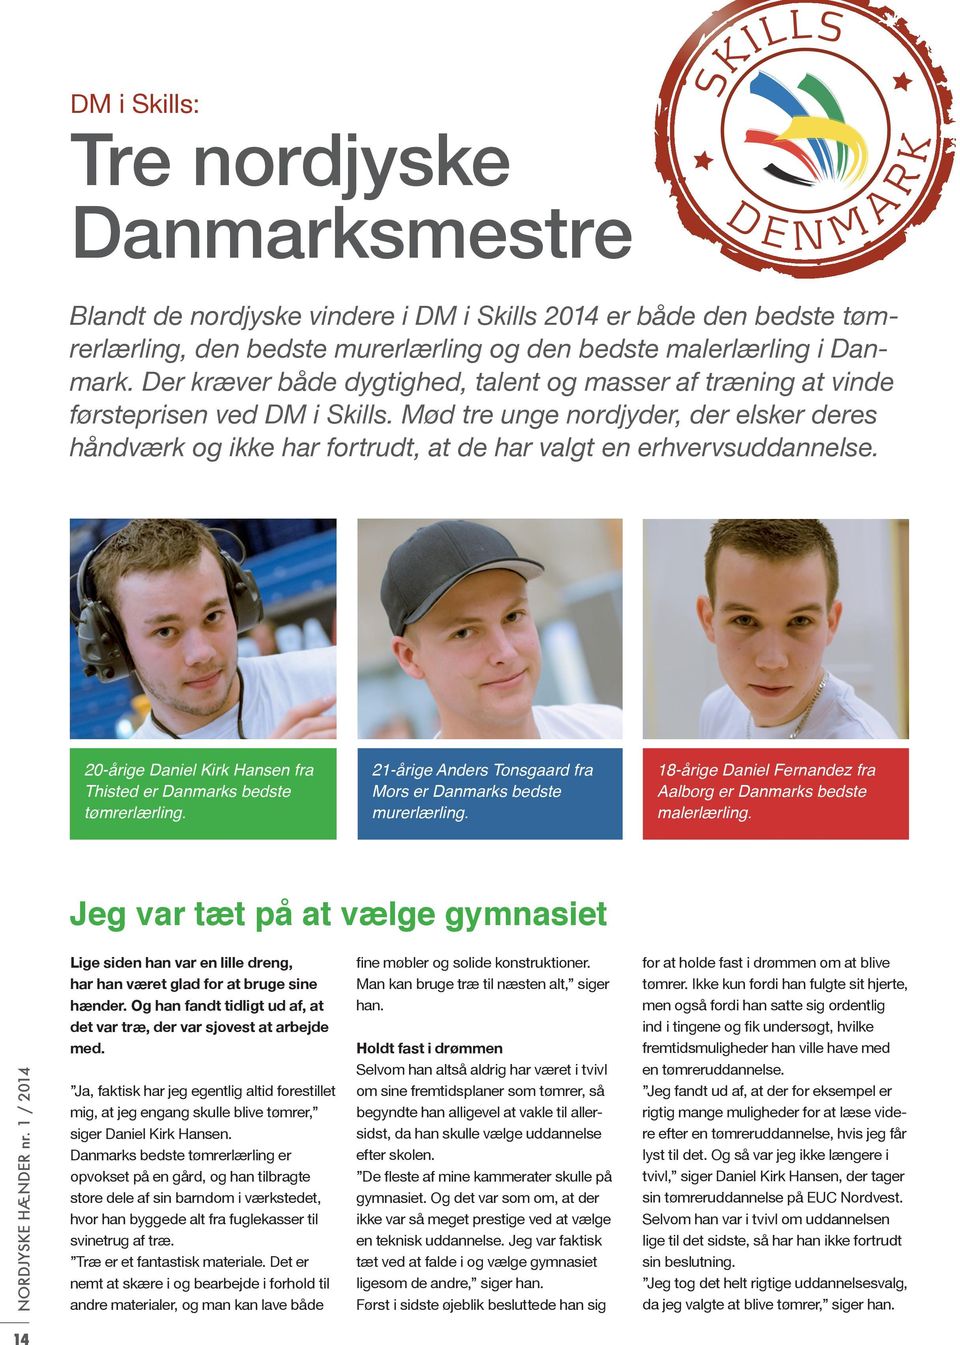 Mød tre unge nordjyder, der elsker deres håndværk og ikke har fortrudt, at de har valgt en erhvervsuddannelse. 20-årige Daniel Kirk Hansen fra Thisted er Danmarks bedste tømrerlærling.